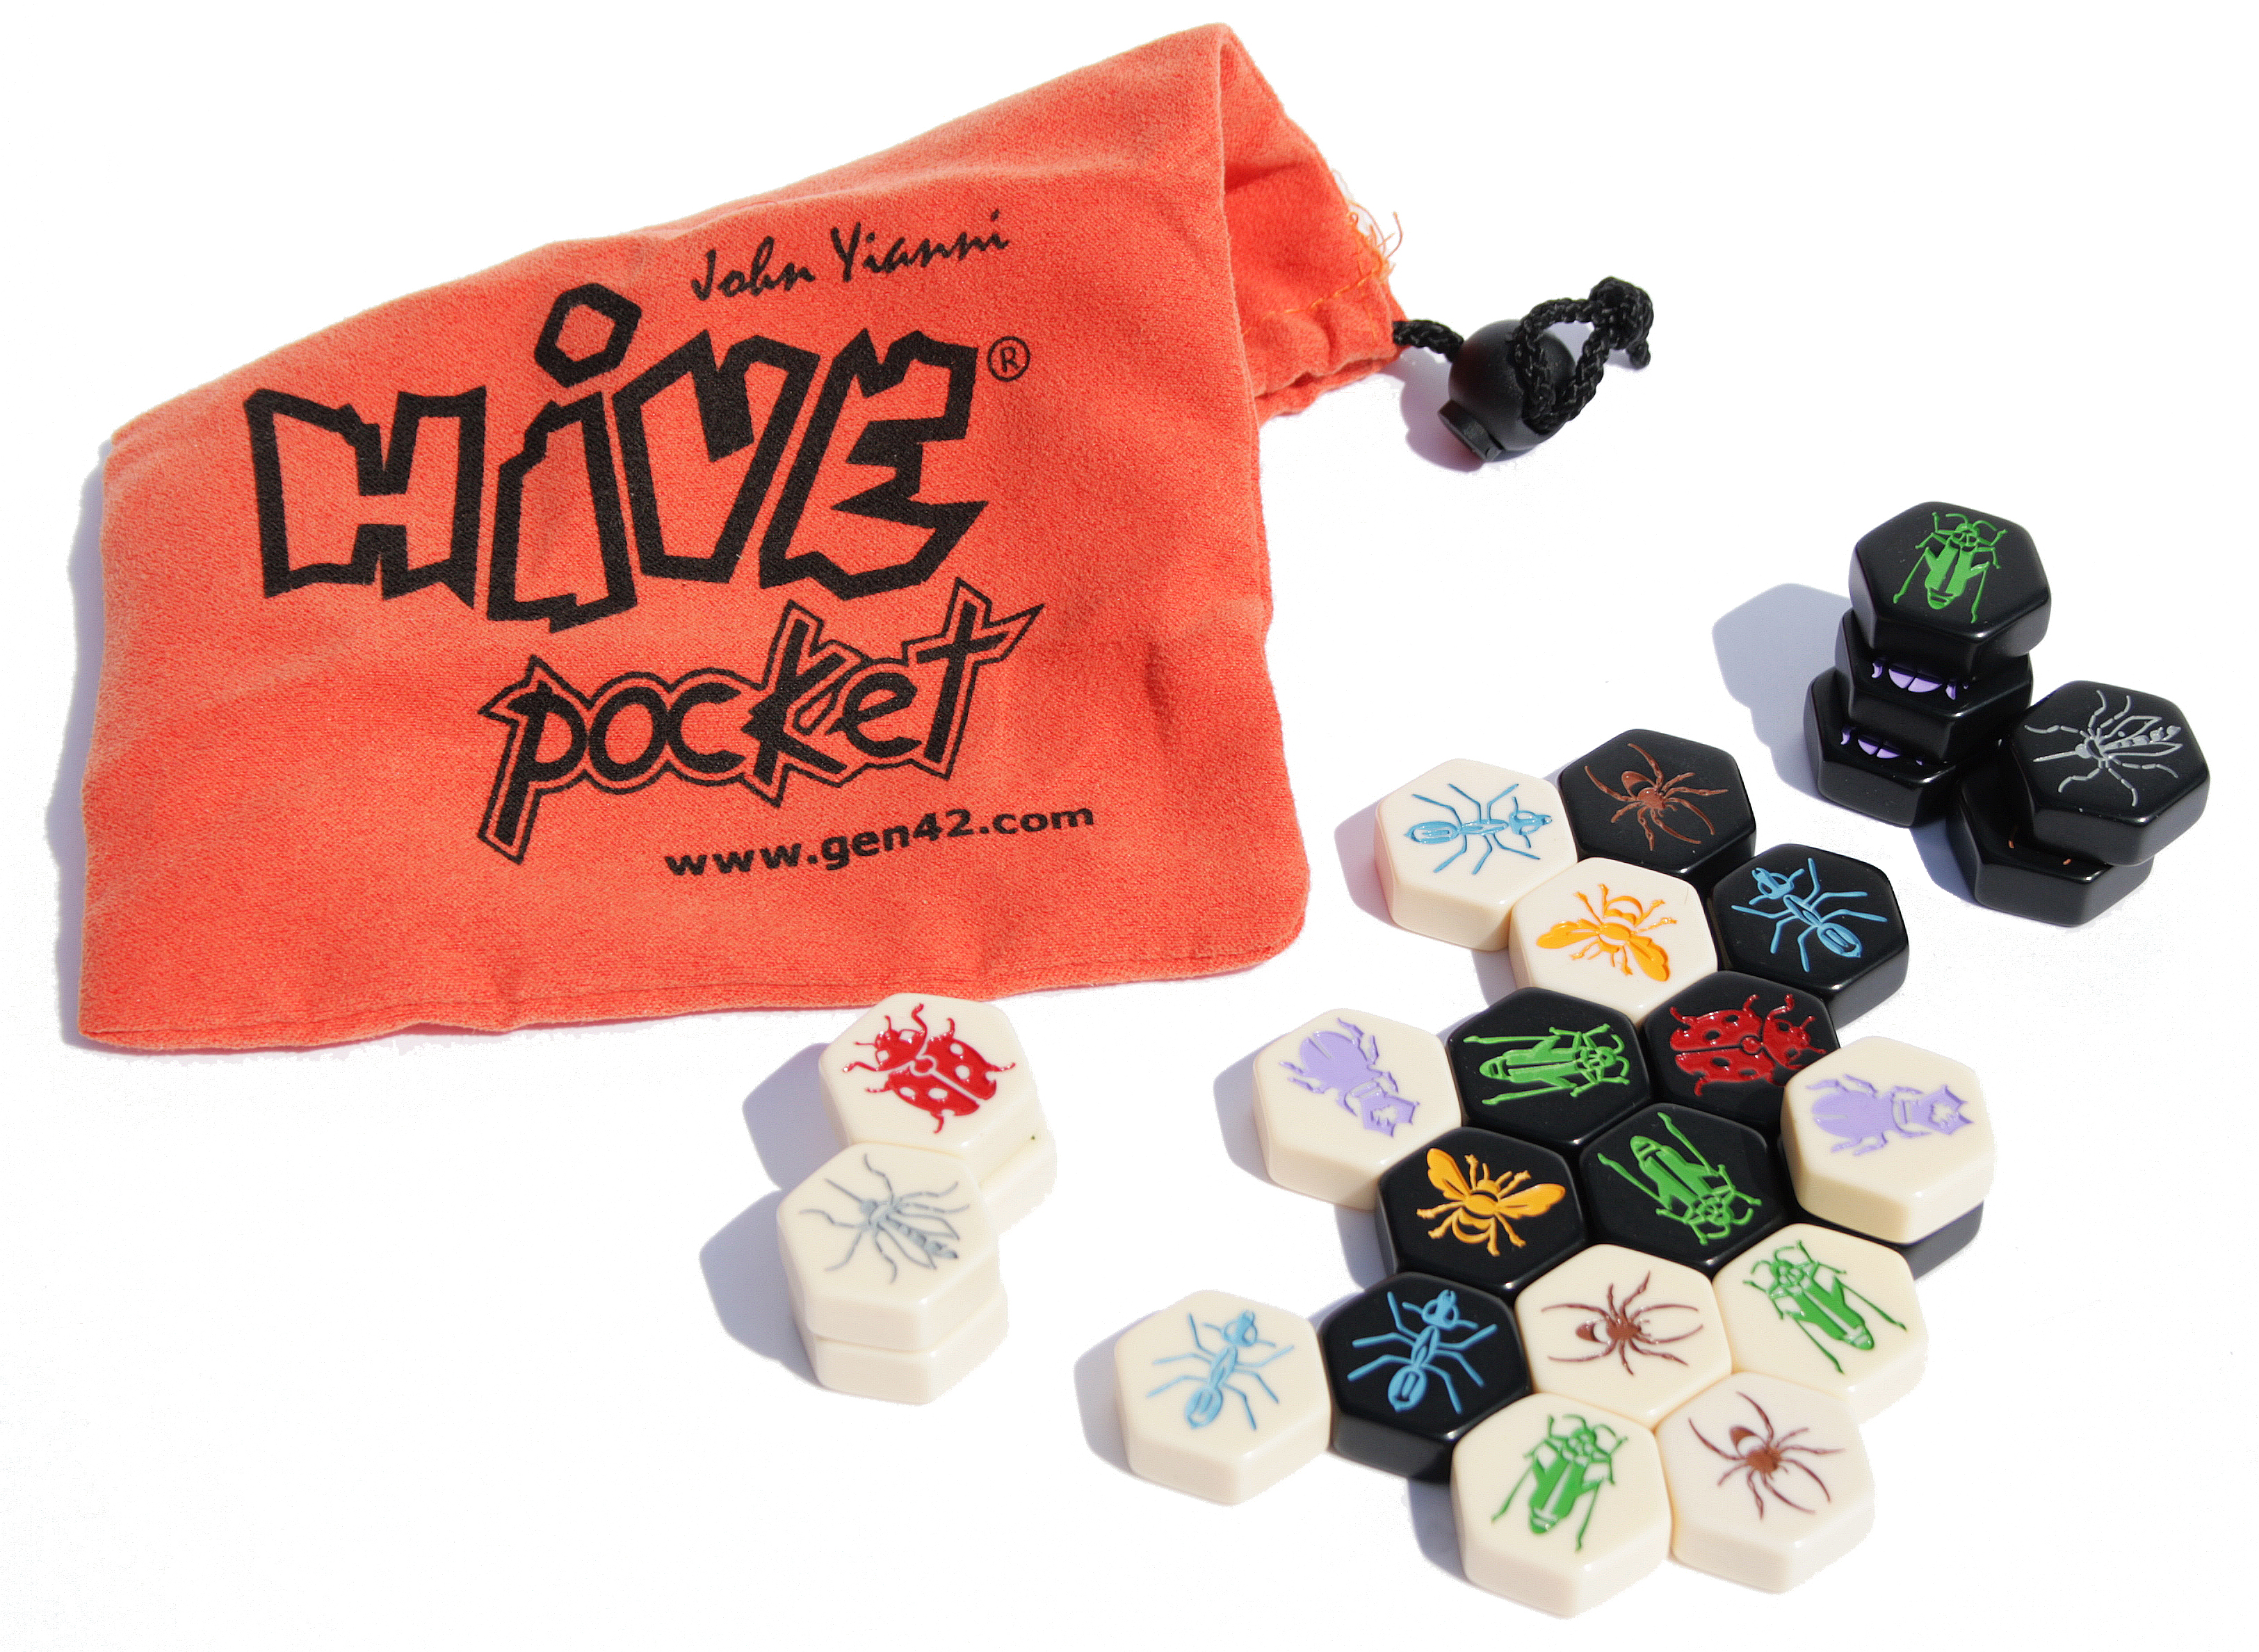 Hive Pocket | Queen of Games Oostende - de beste, leukste bordspellen en  kaartspellen kopen aan een eerlijke goedkope prijs.